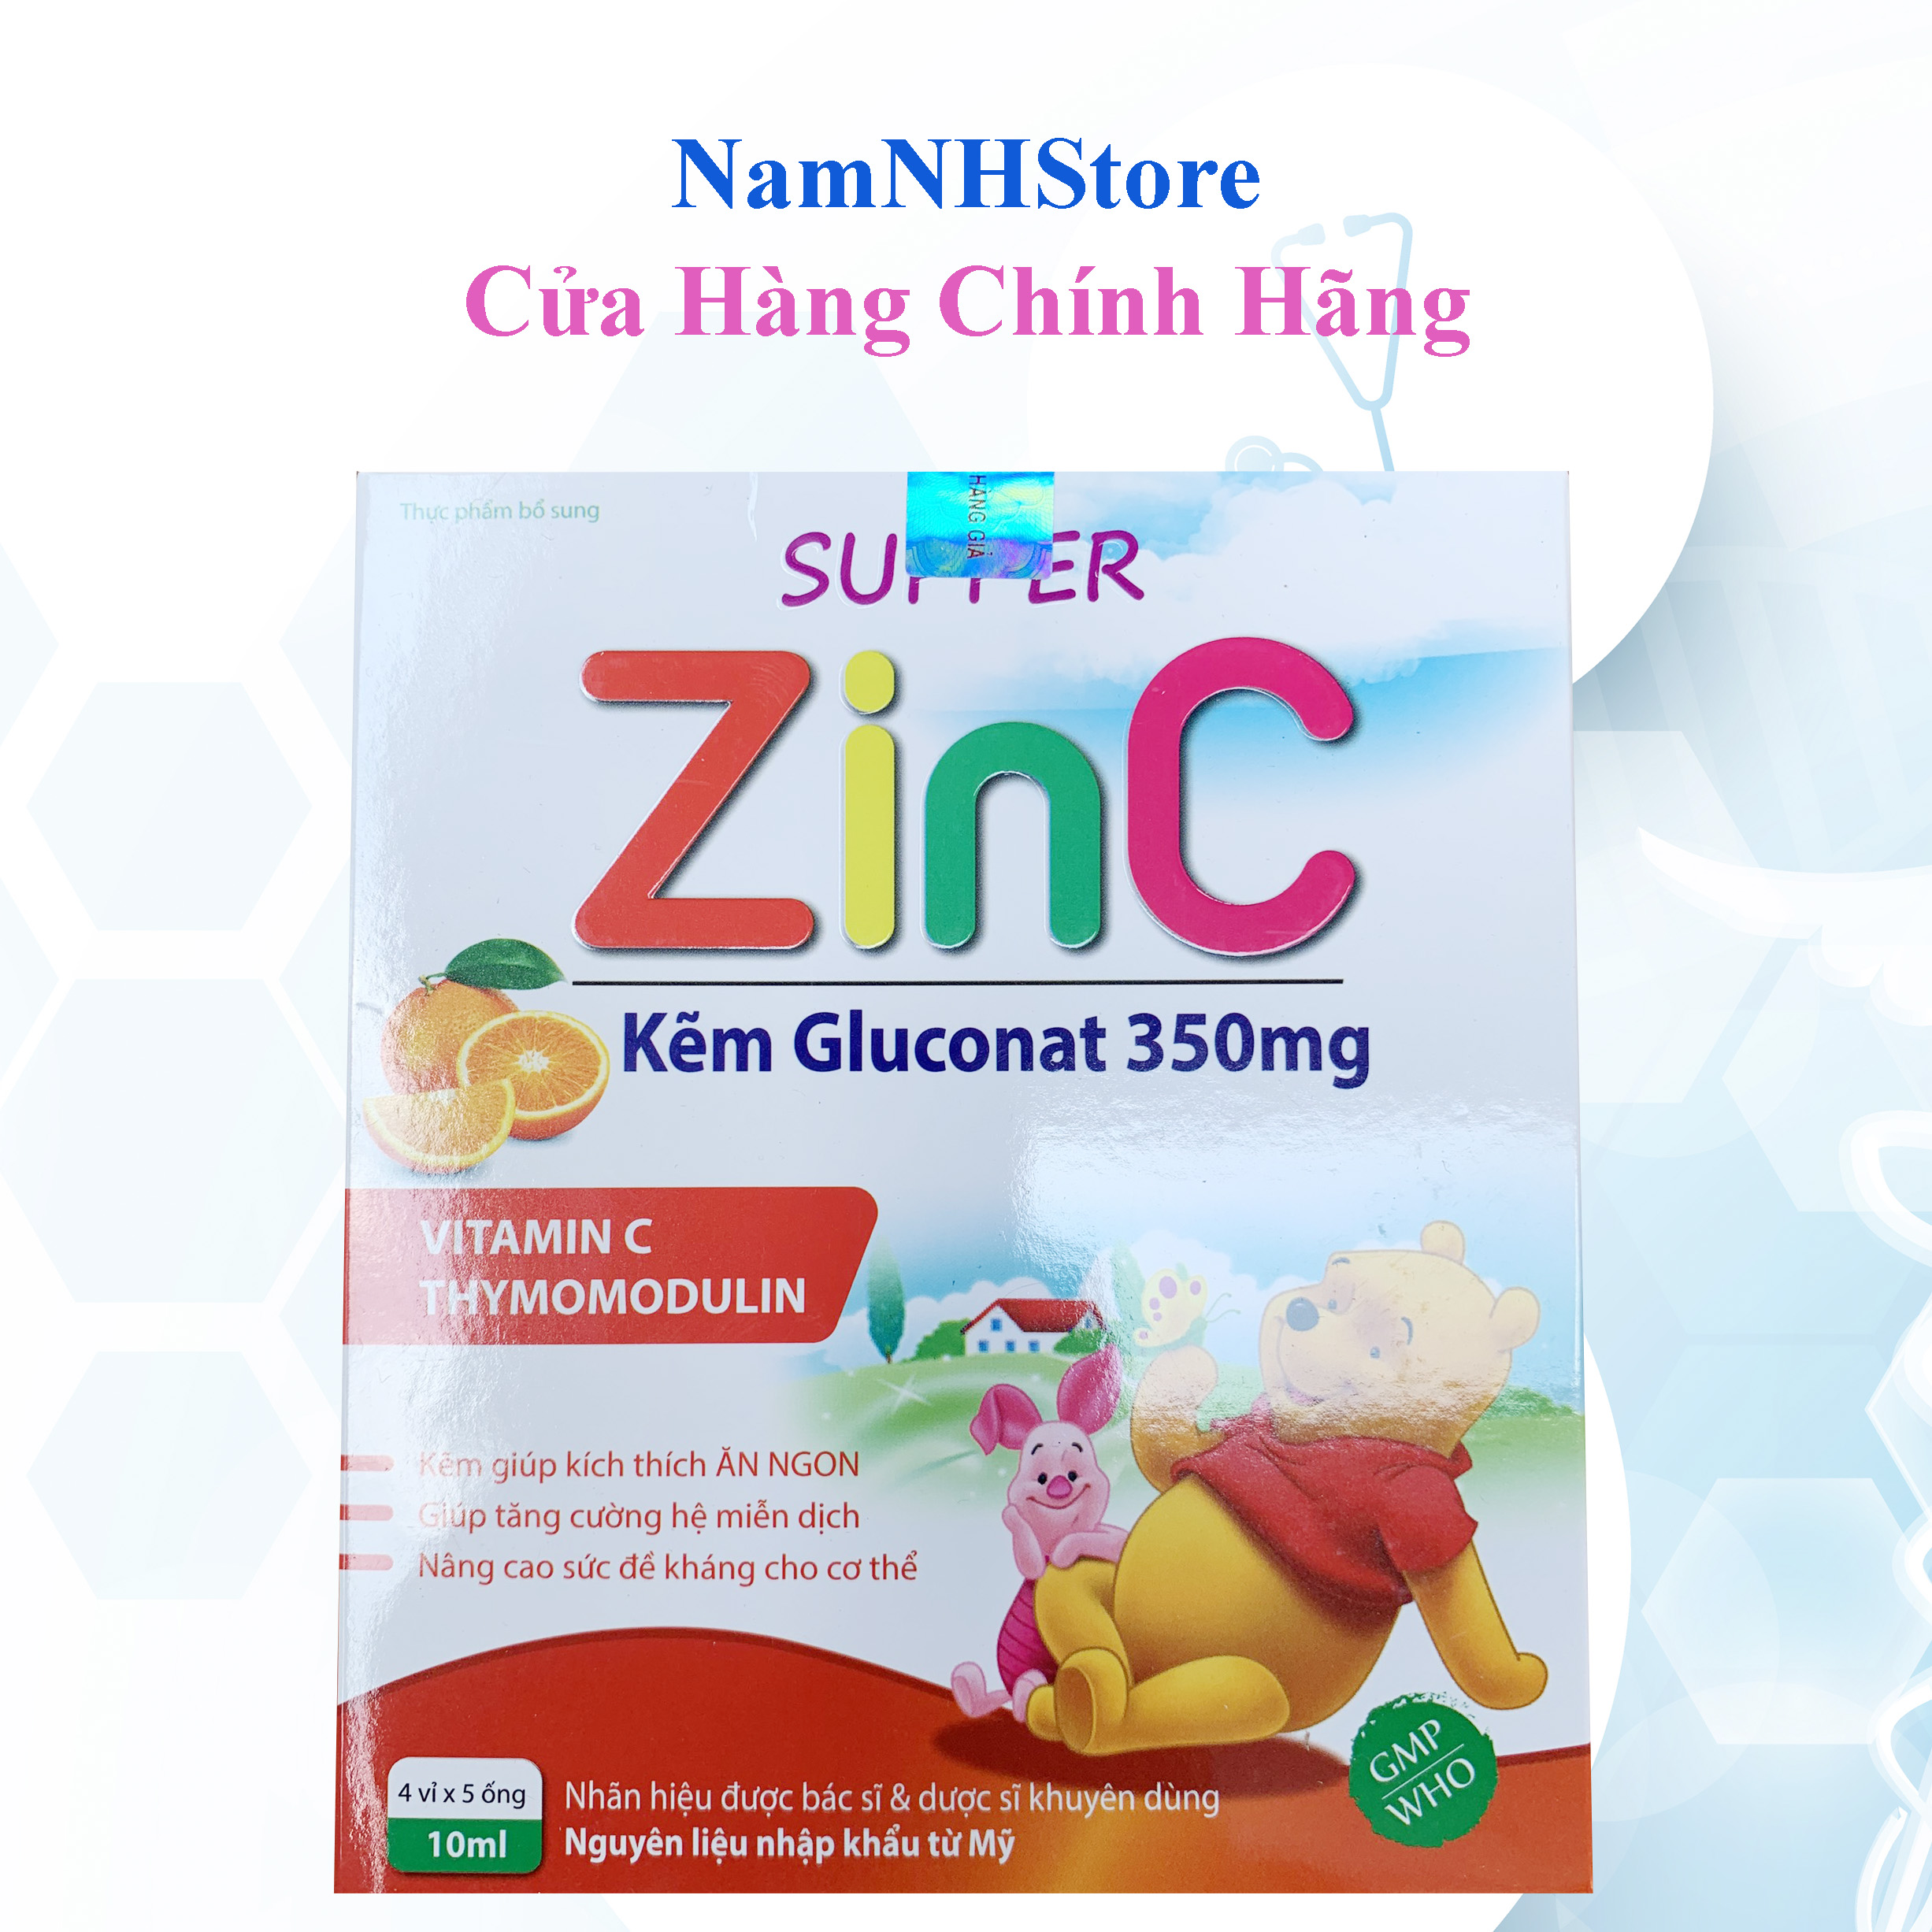 Siro Super Zin C - bổ sung kẽm, hỗ trợ ăn ngon, tăng cường sức khỏe